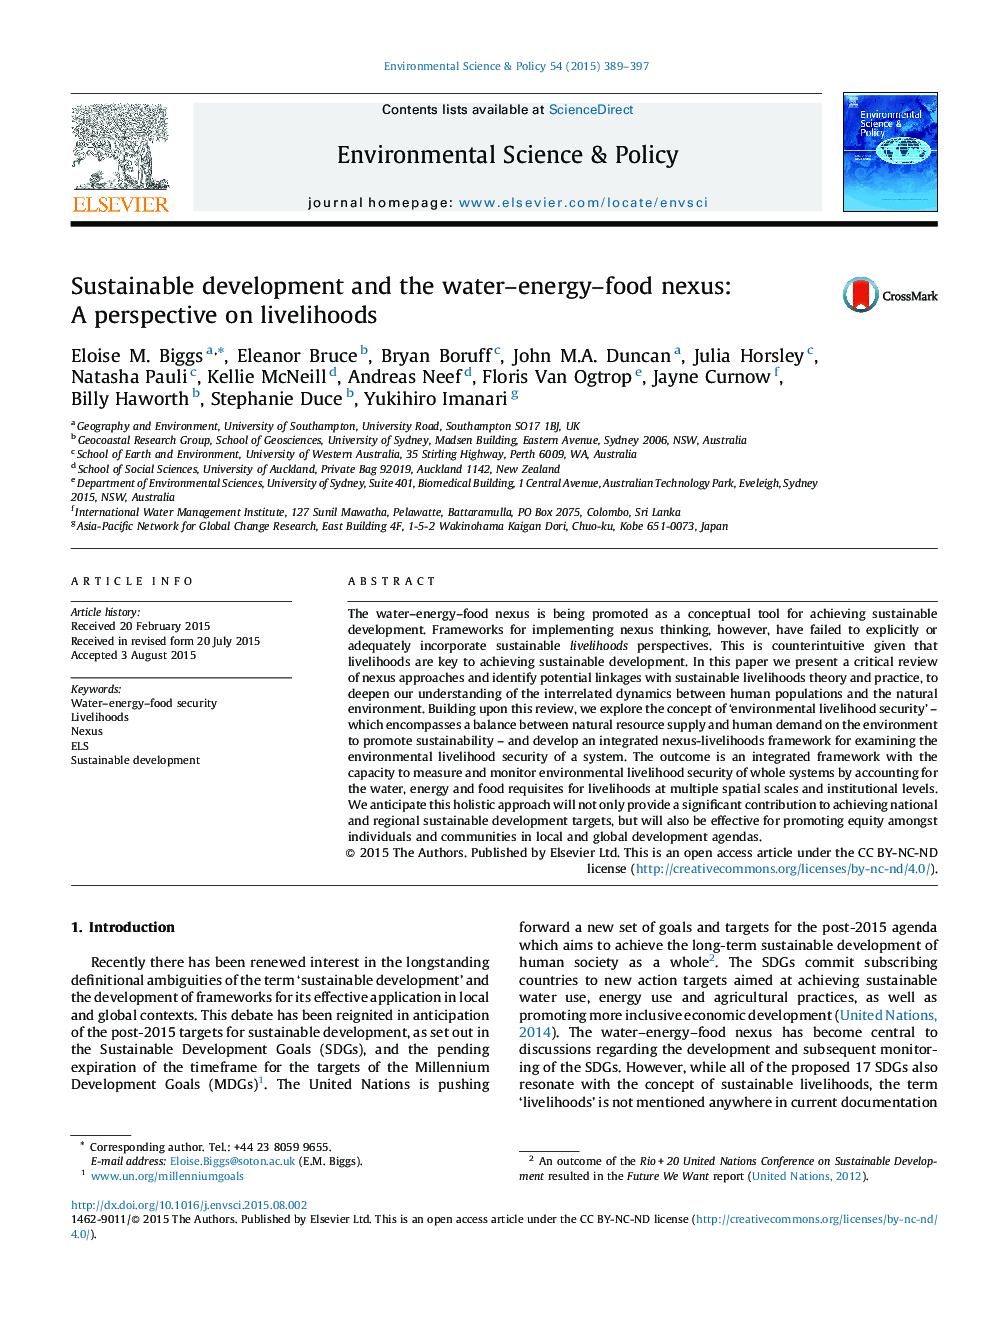 توسعه پایدار و ارتباطات آب و انرژی - مواد غذایی: دیدگاه معیشتی 